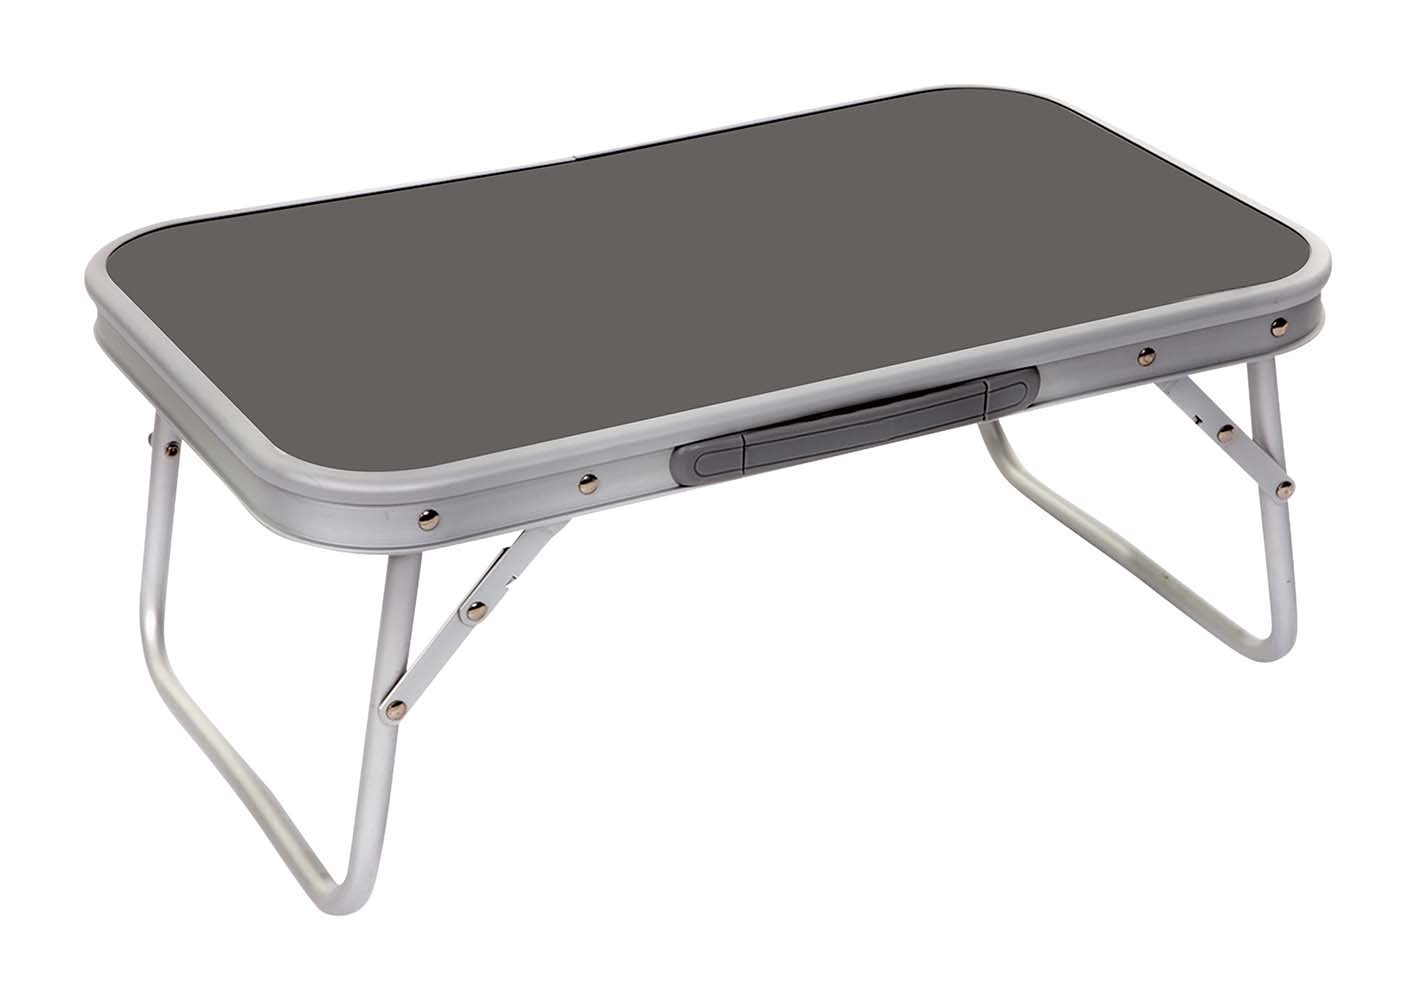 1404359 Ein extra niedriger und kompakter Tisch. Dieser Klapptisch ist ein niedriges Modell mit einklappbaren Beinen. Hergestellt aus stabilem und leichtgewichtigem Aluminium. Eingeklappt (LxBxH): 56x34x3,5 cm.